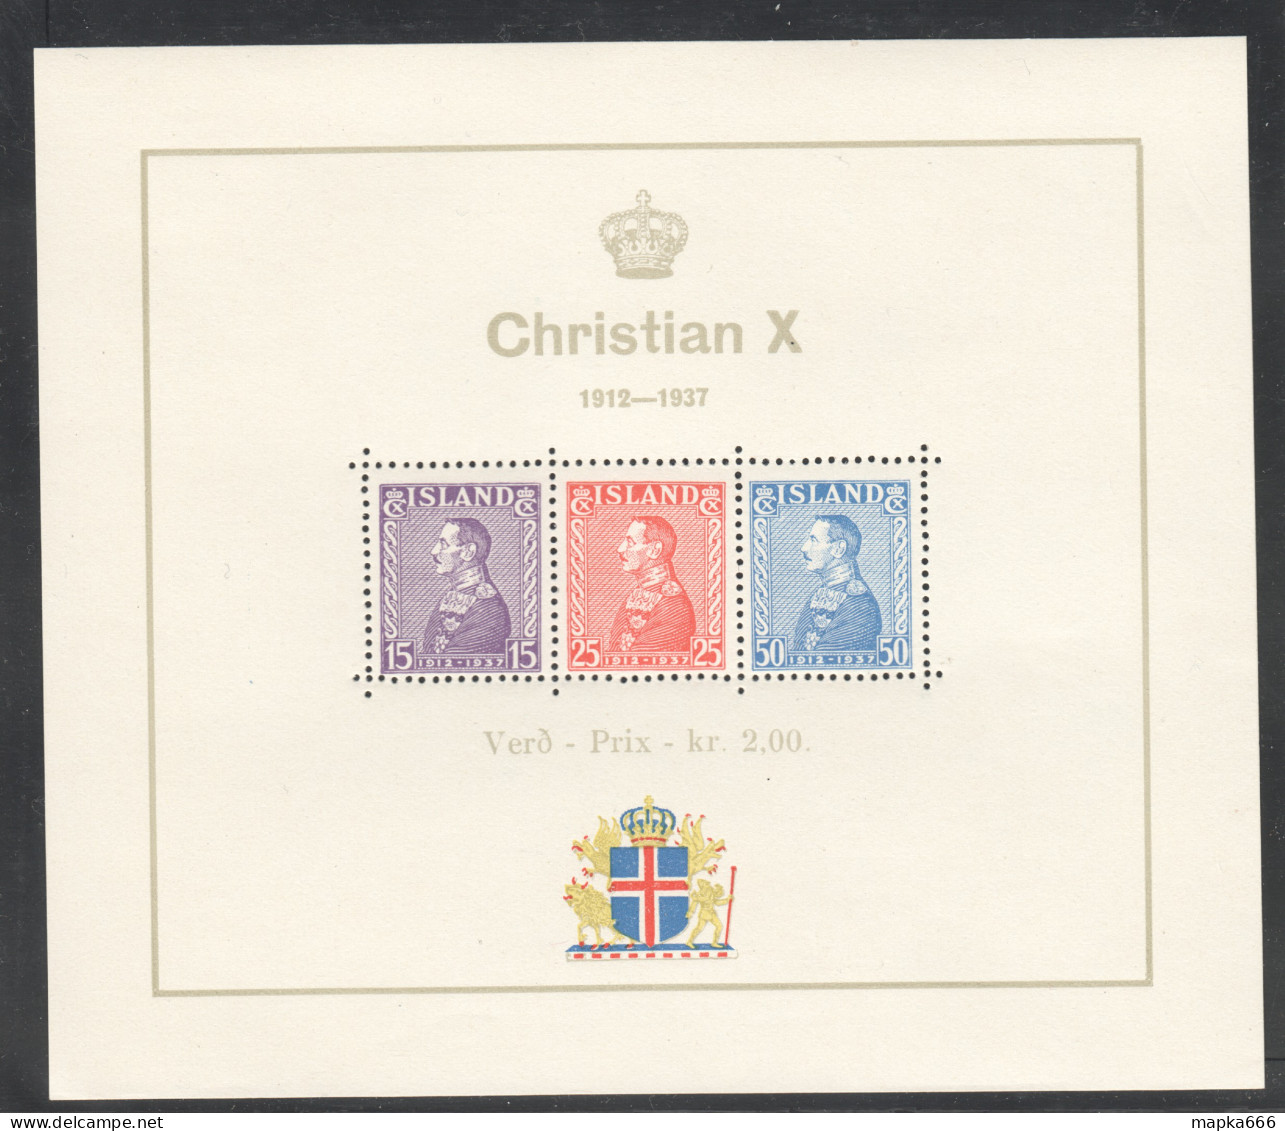 Sp655 1937 Iceland King Christian X Michel Bl1 70 Euro 1Bl Mnh - Blokken & Velletjes